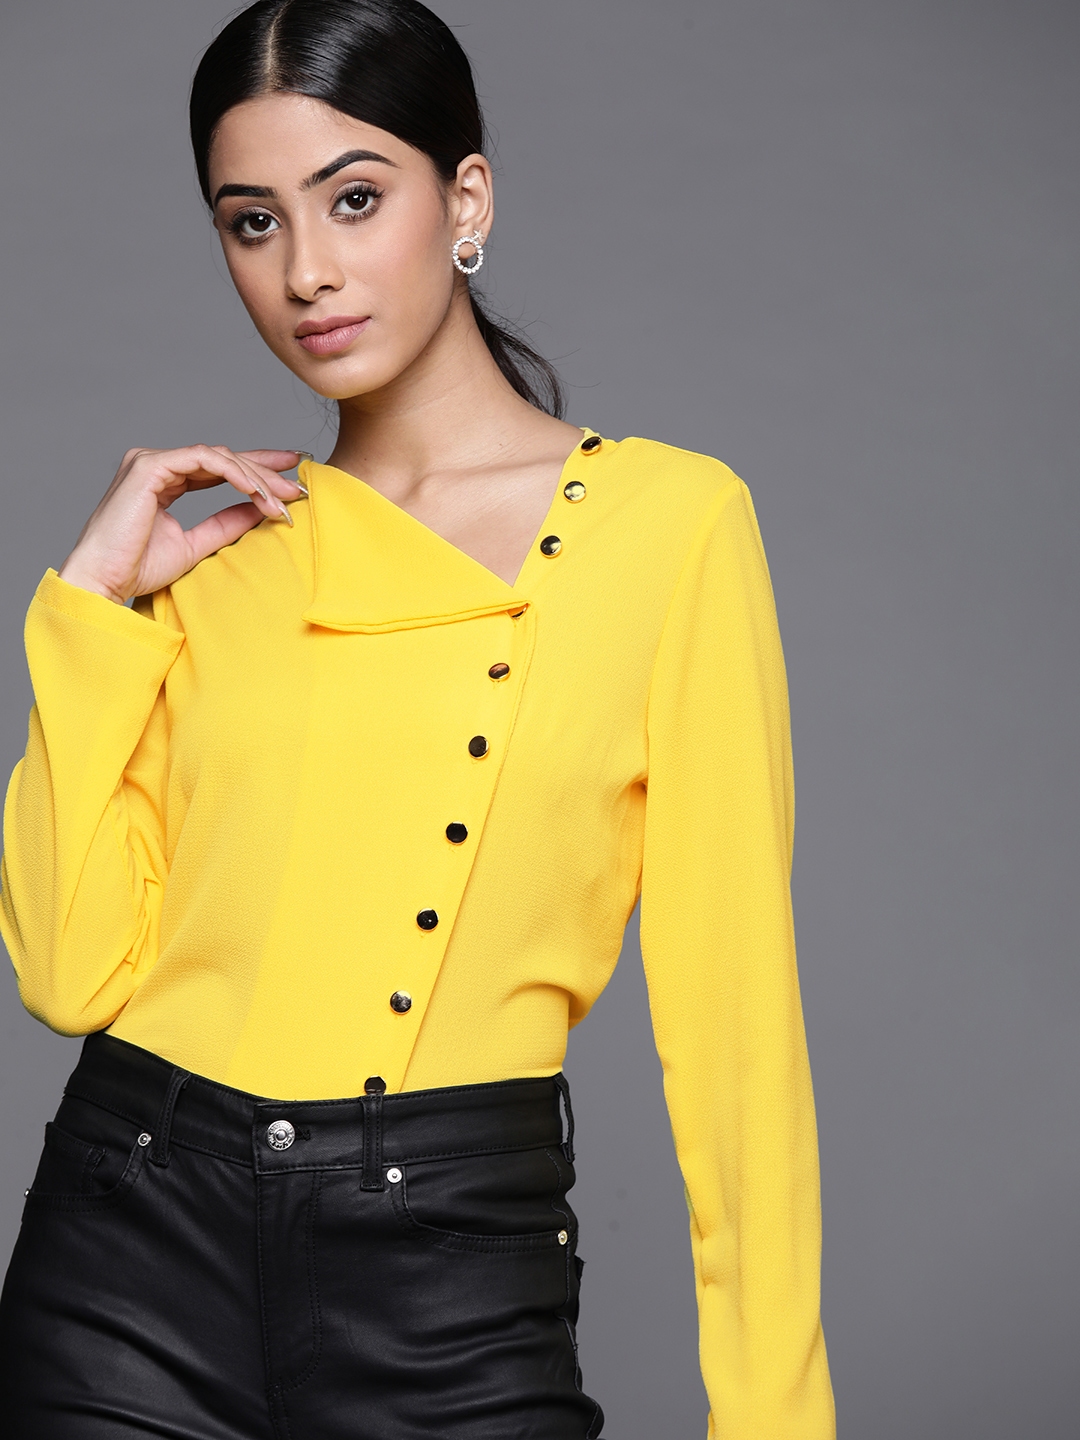 Buy JC Mode Women Yellow Solid Regular Top - Tops for Women 16523678 ...